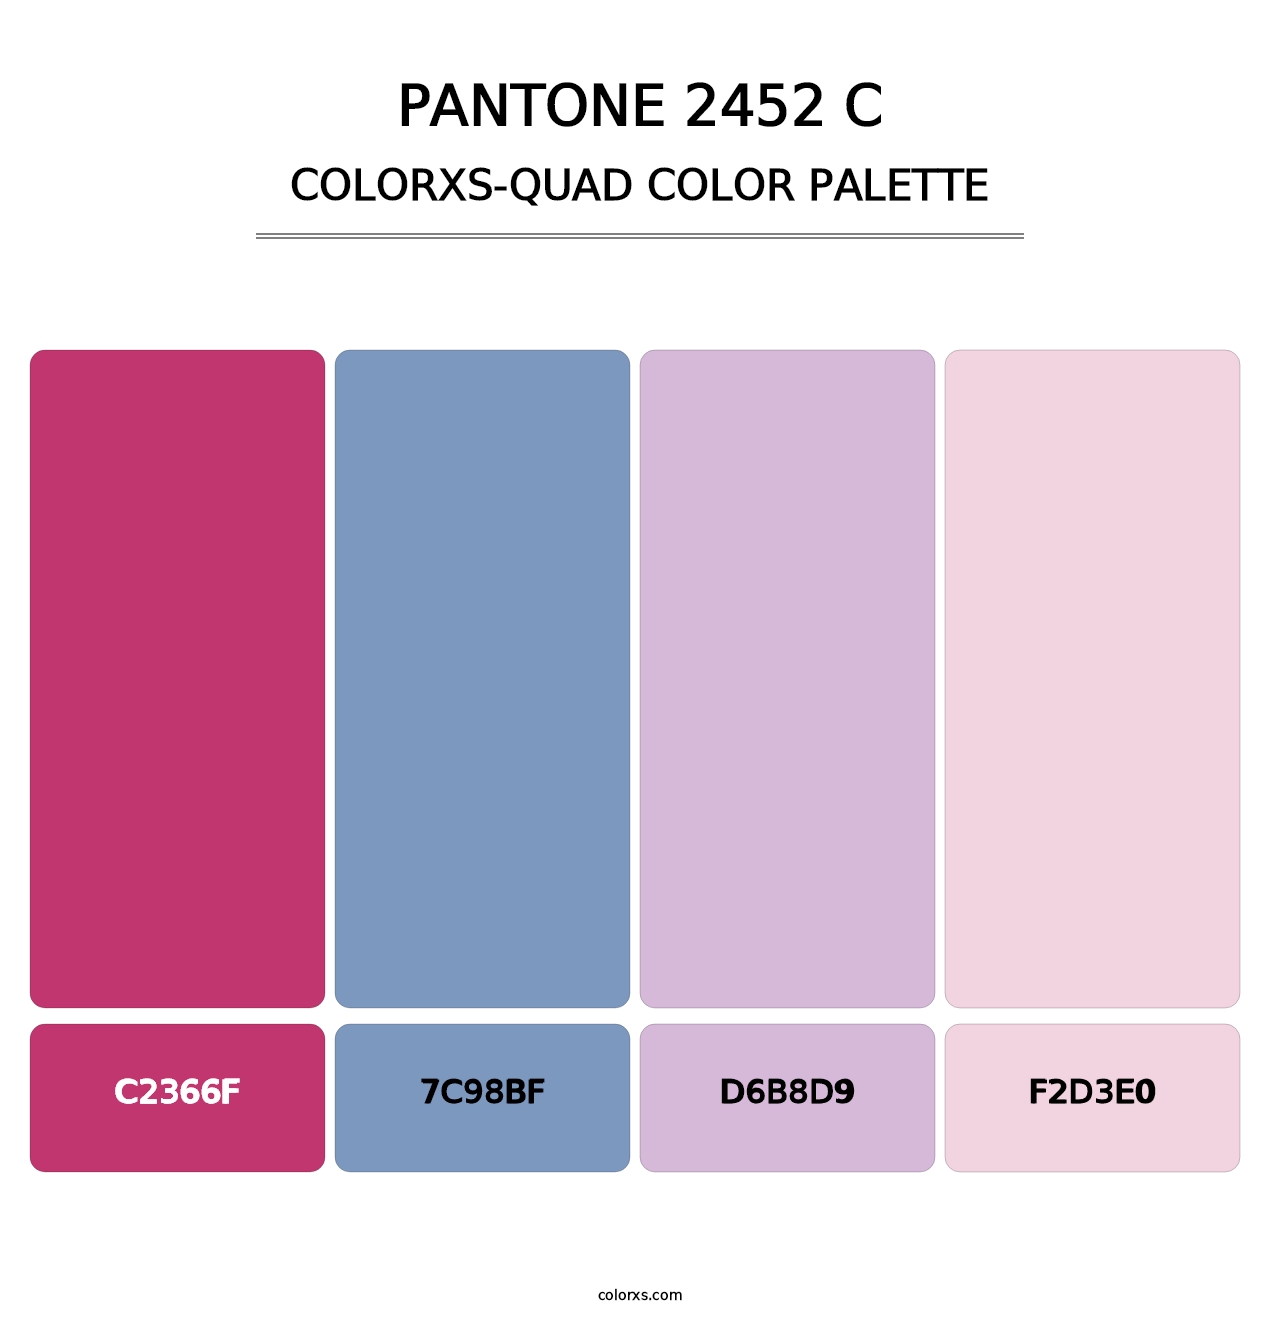 PANTONE 2452 C - Colorxs Quad Palette